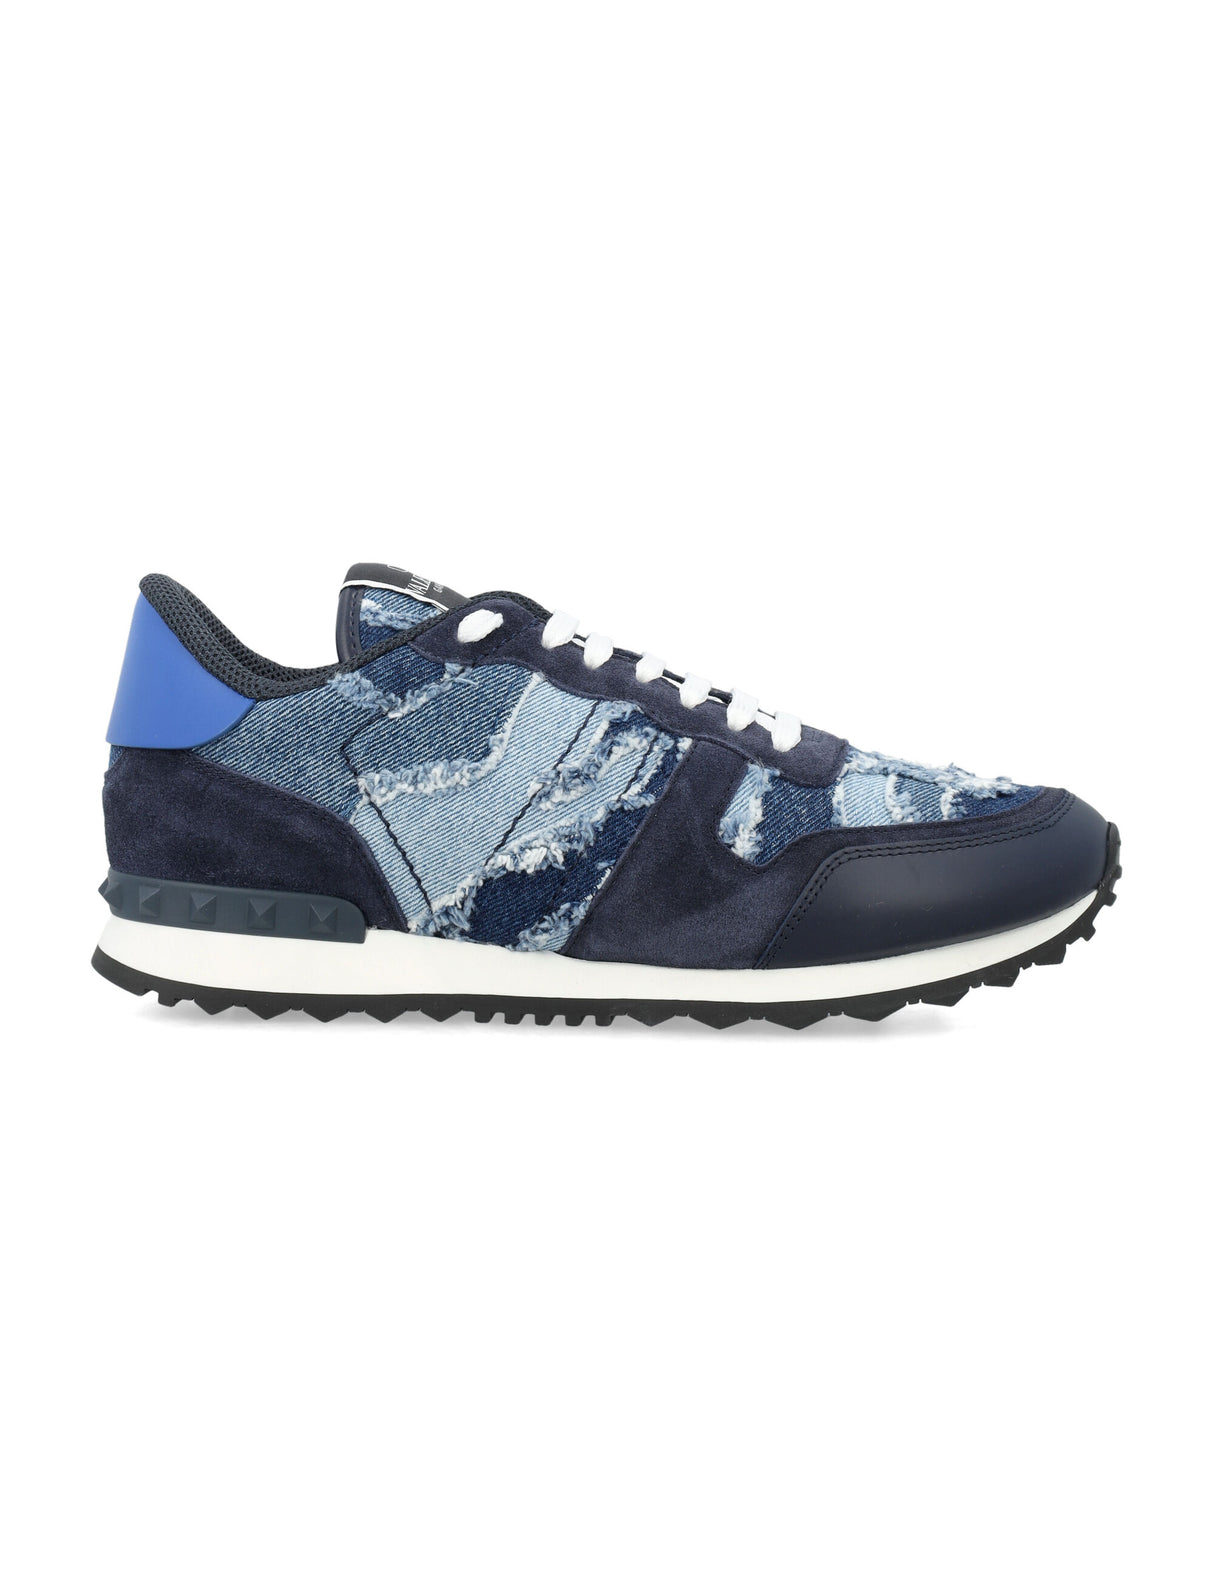 أحذية رياضية جينز روك رانر بتصميم كامو باللونين الأزرق والأسود للرجال